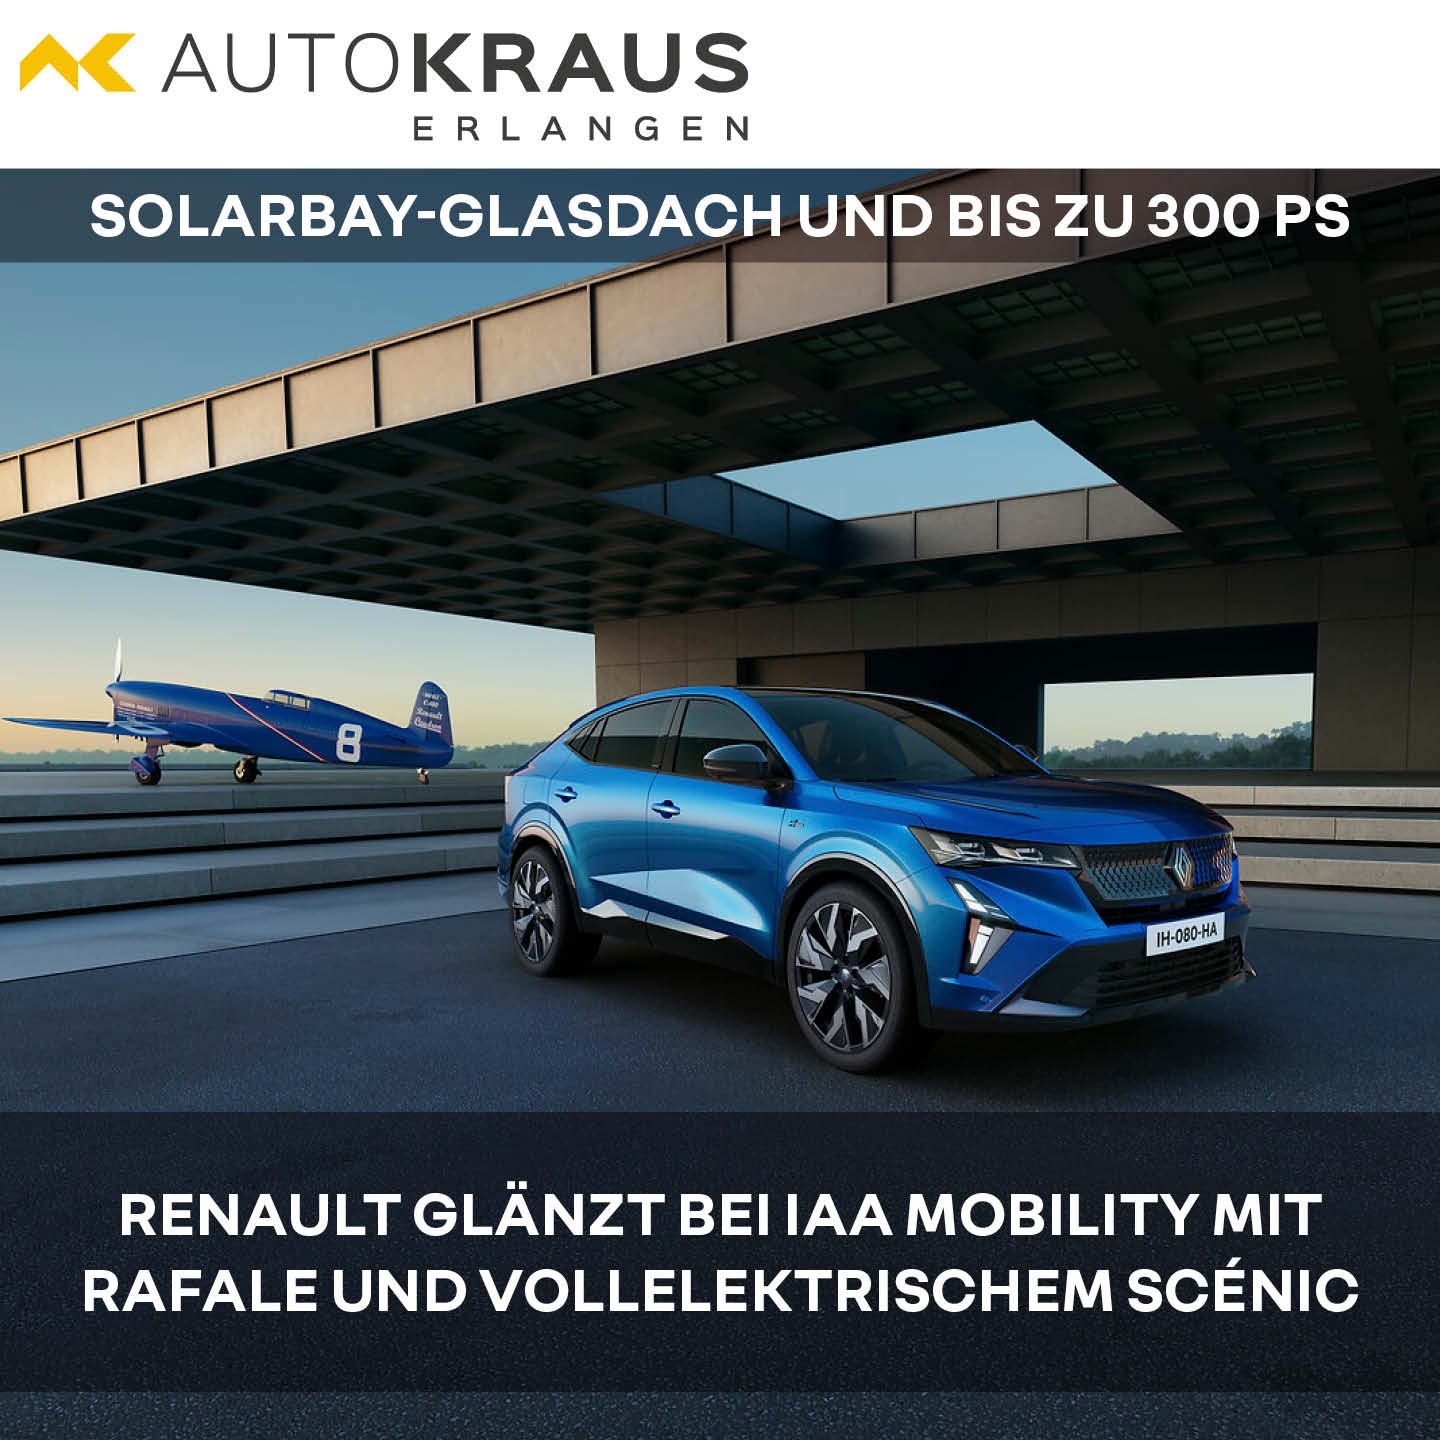 Renault glänzt bei IAA Mobility mit Rafale und vollelektrischem Scénic